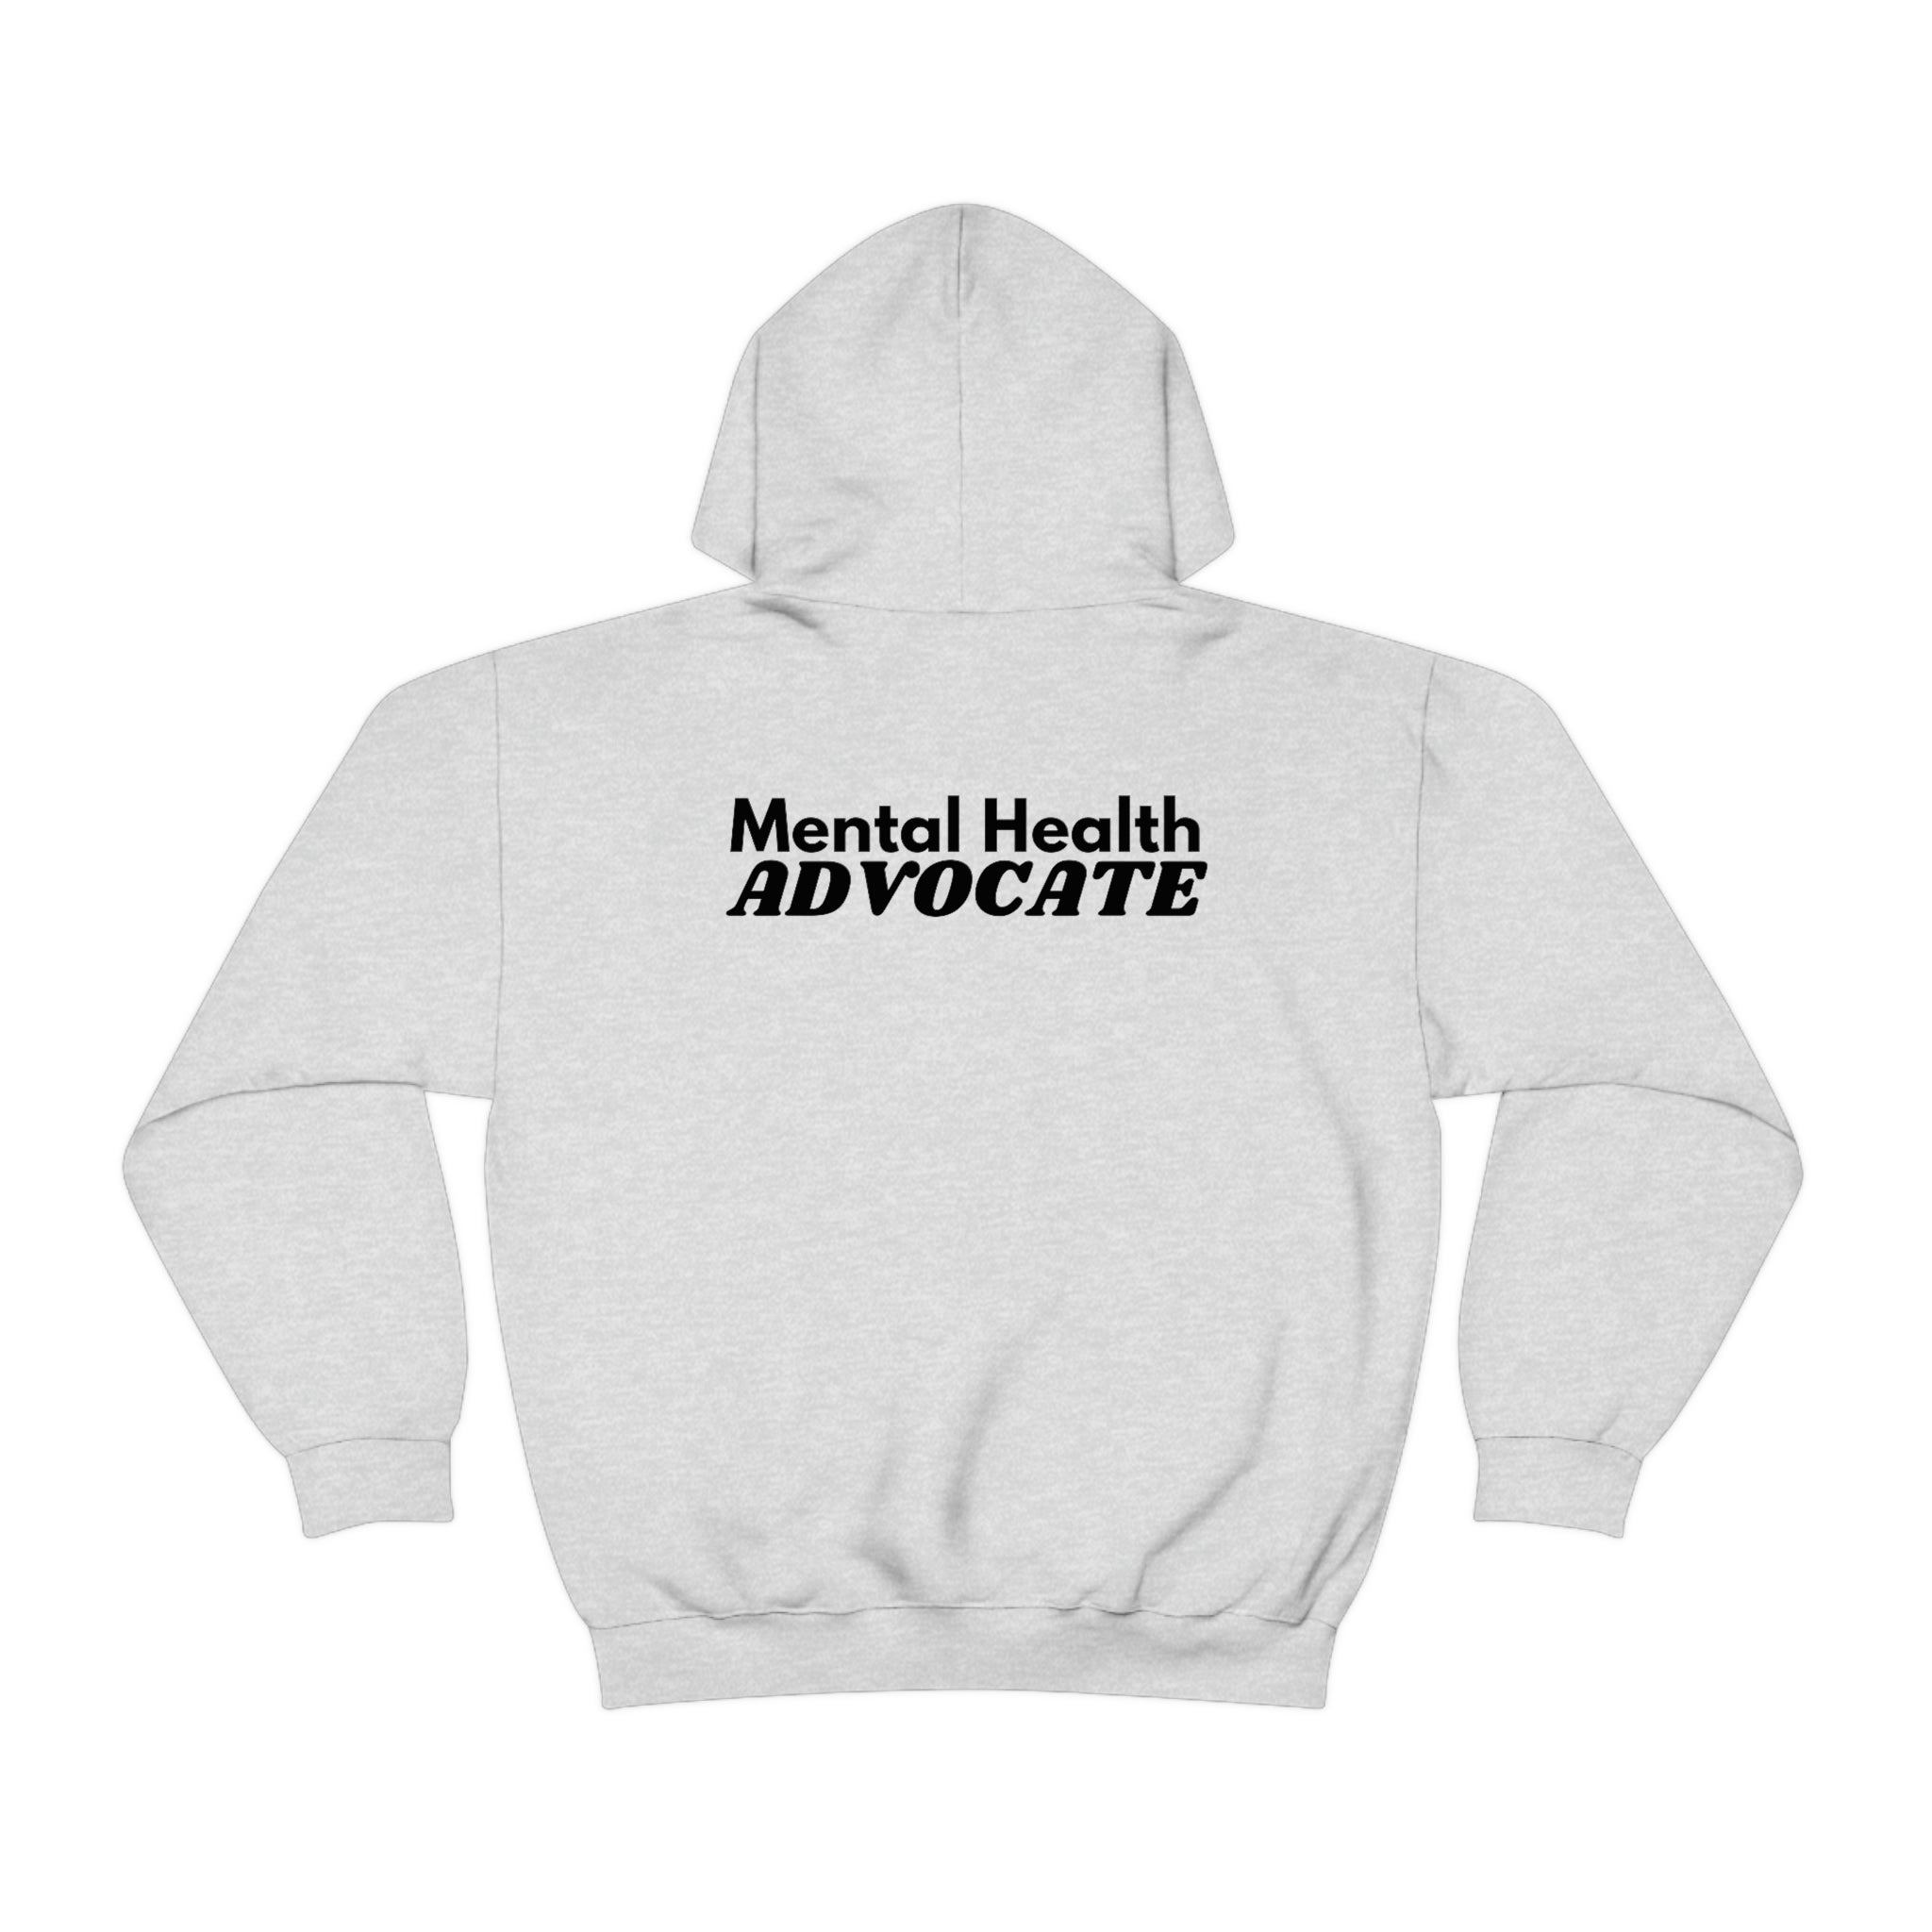 "Mental Health Advocate" Minimalist Unisex Hoodie